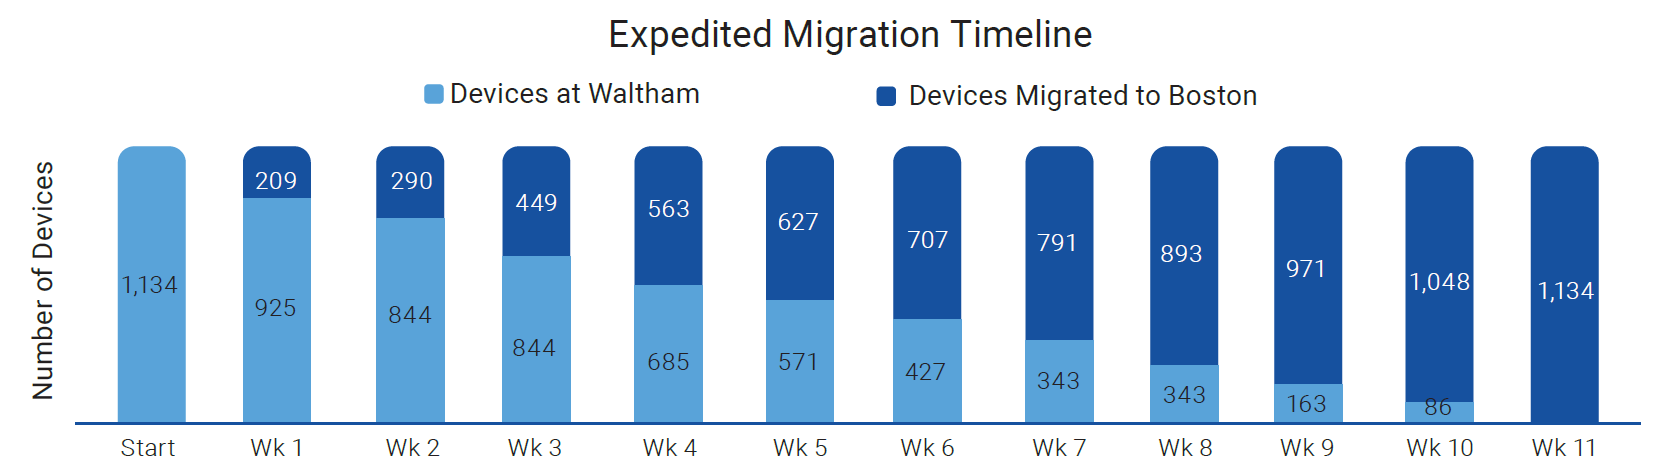 Expedited Migration Timeline